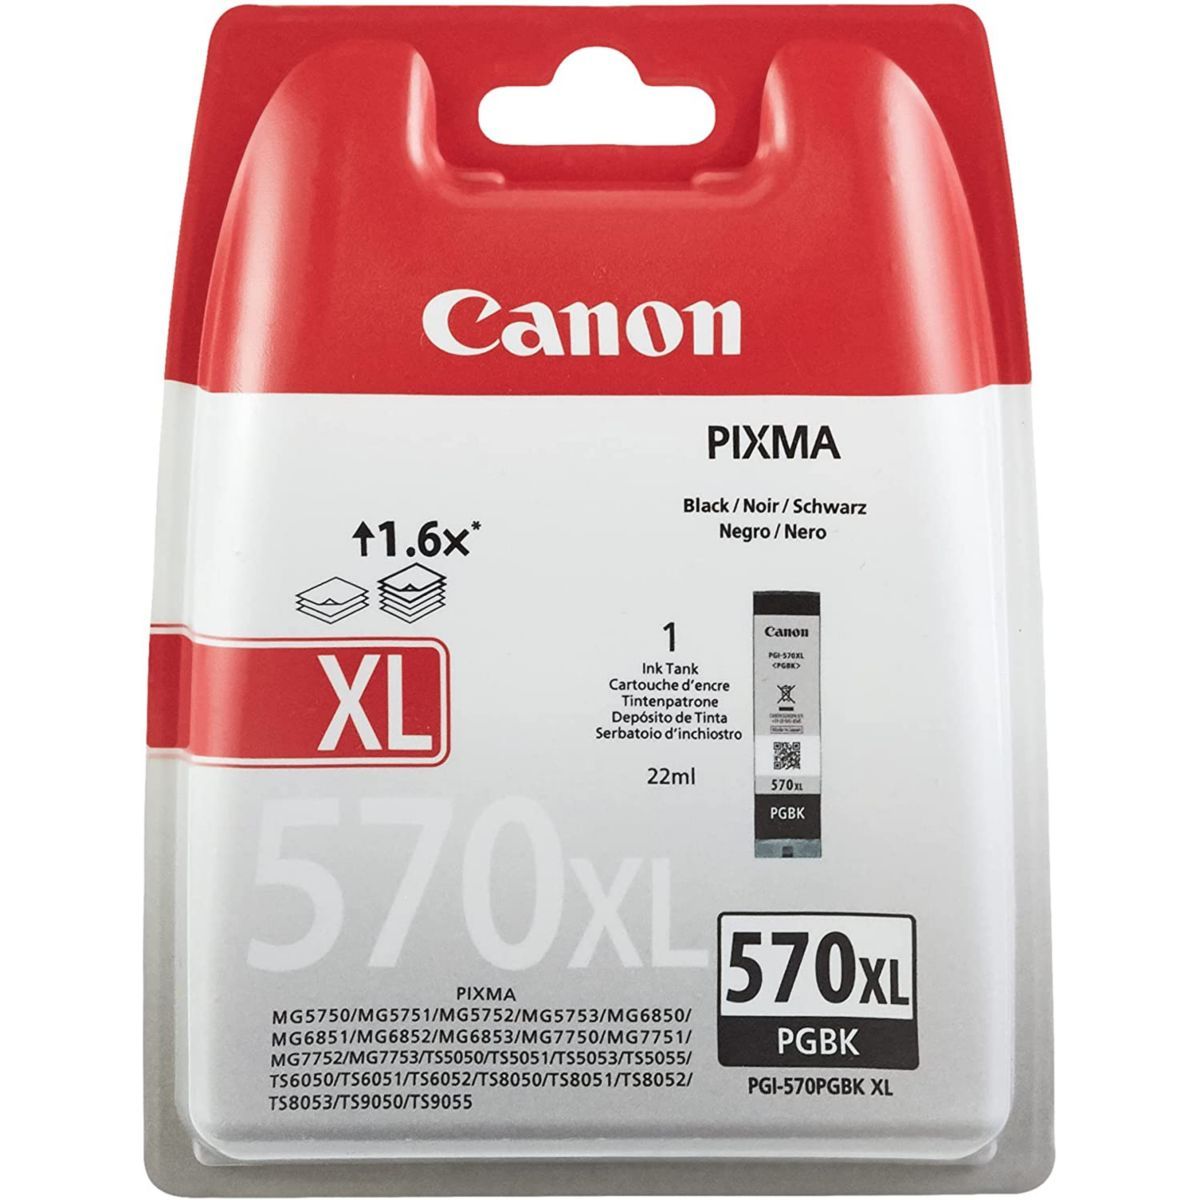 Cartouche Premium compatible Canon PG-540 XL noir - Format XL